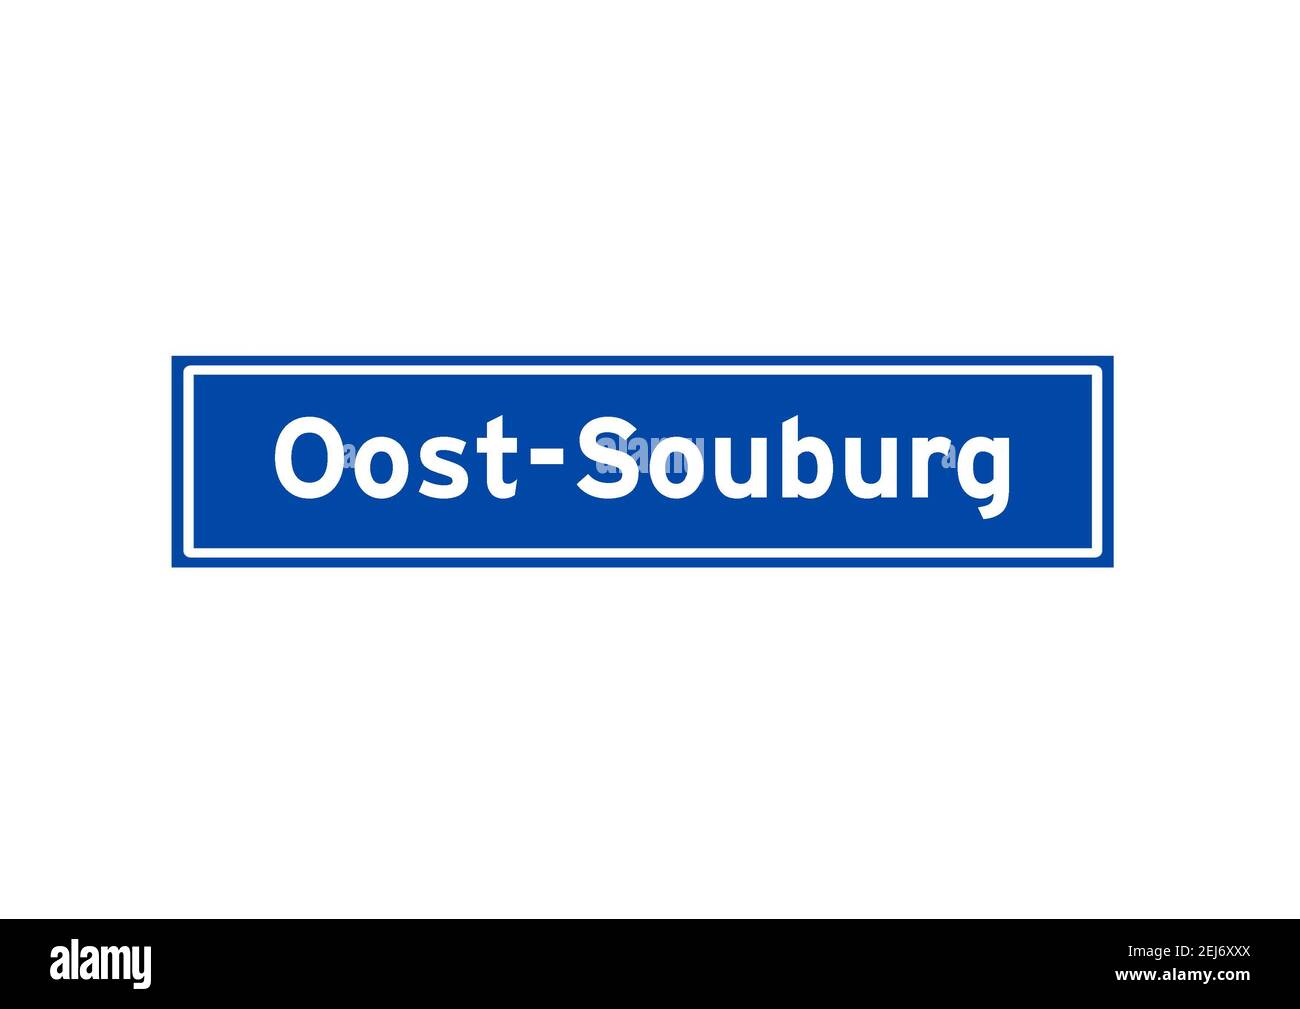 Oost-Souburg isoliertes niederländisches Ortsnamen-Schild. Stadtschild aus den Niederlanden. Stockfoto